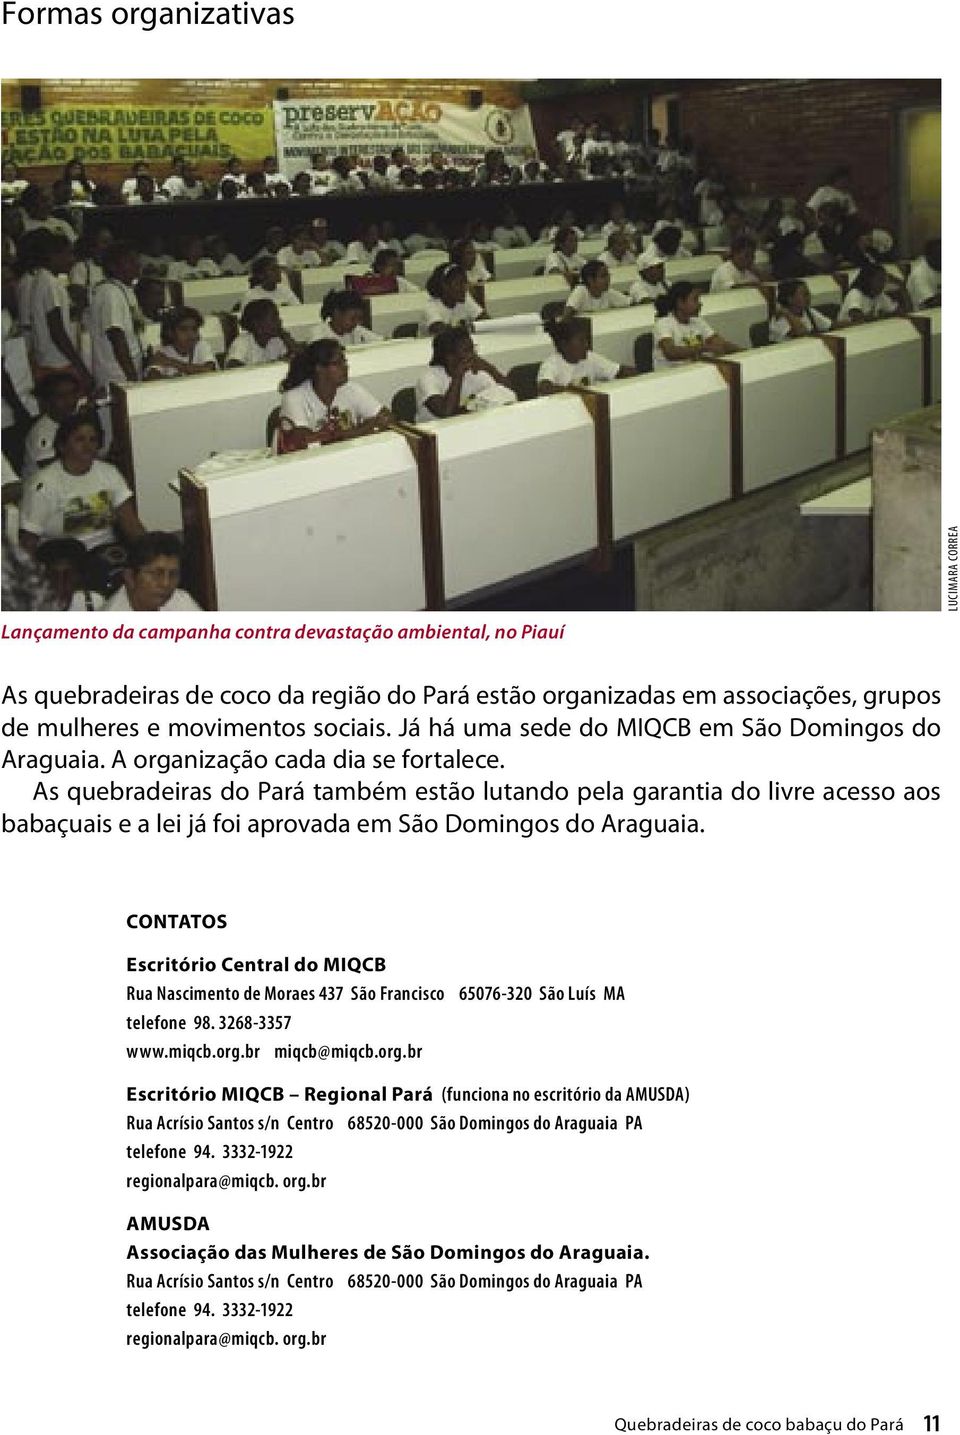 As quebradeiras do Pará também estão lutando pela garantia do livre acesso aos babaçuais e a lei já foi aprovada em São Domingos do Araguaia.